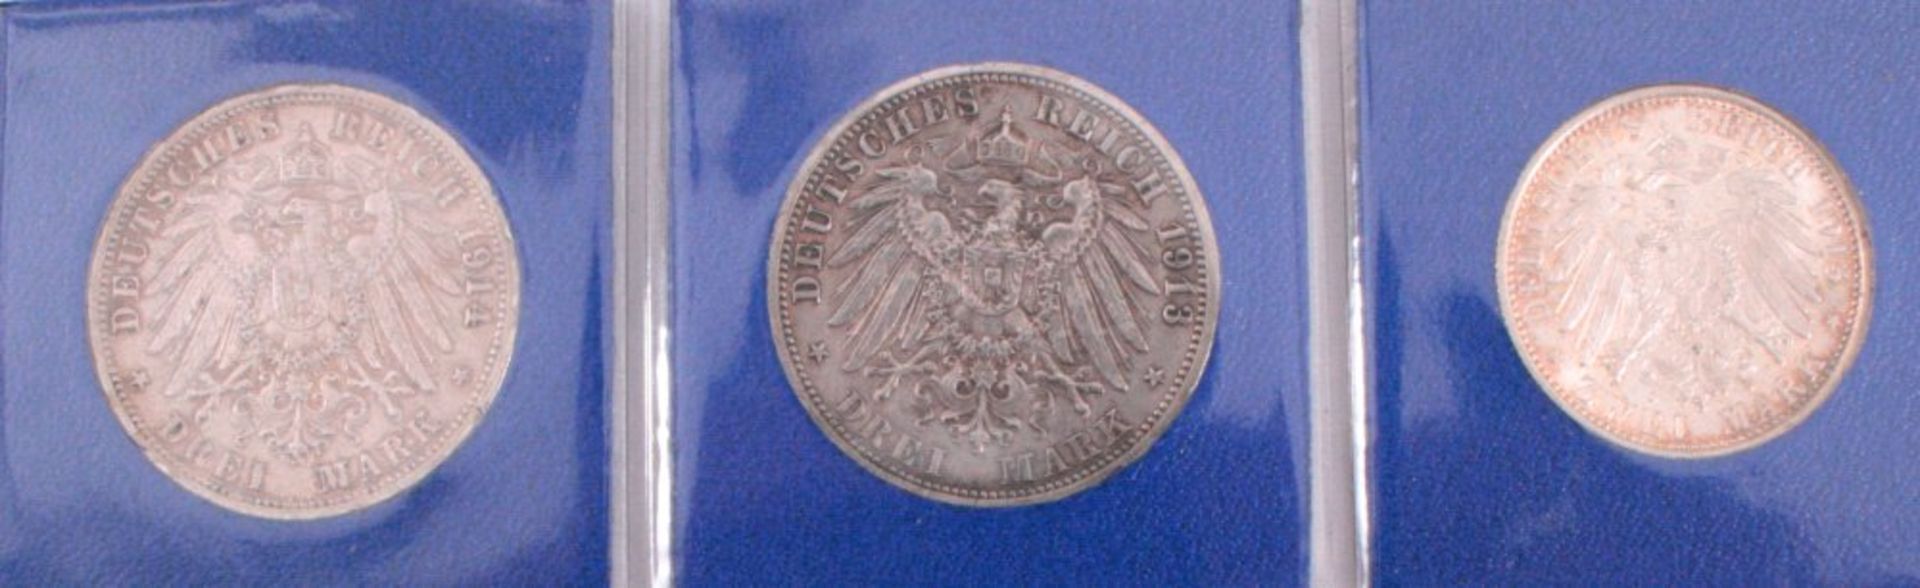 3 Münzen Kaiserreich, Preußen2 x 3 Mark Silber 1913 A, 25jähriges Regierungsjubiläum,J. 112 1913, - Image 2 of 2